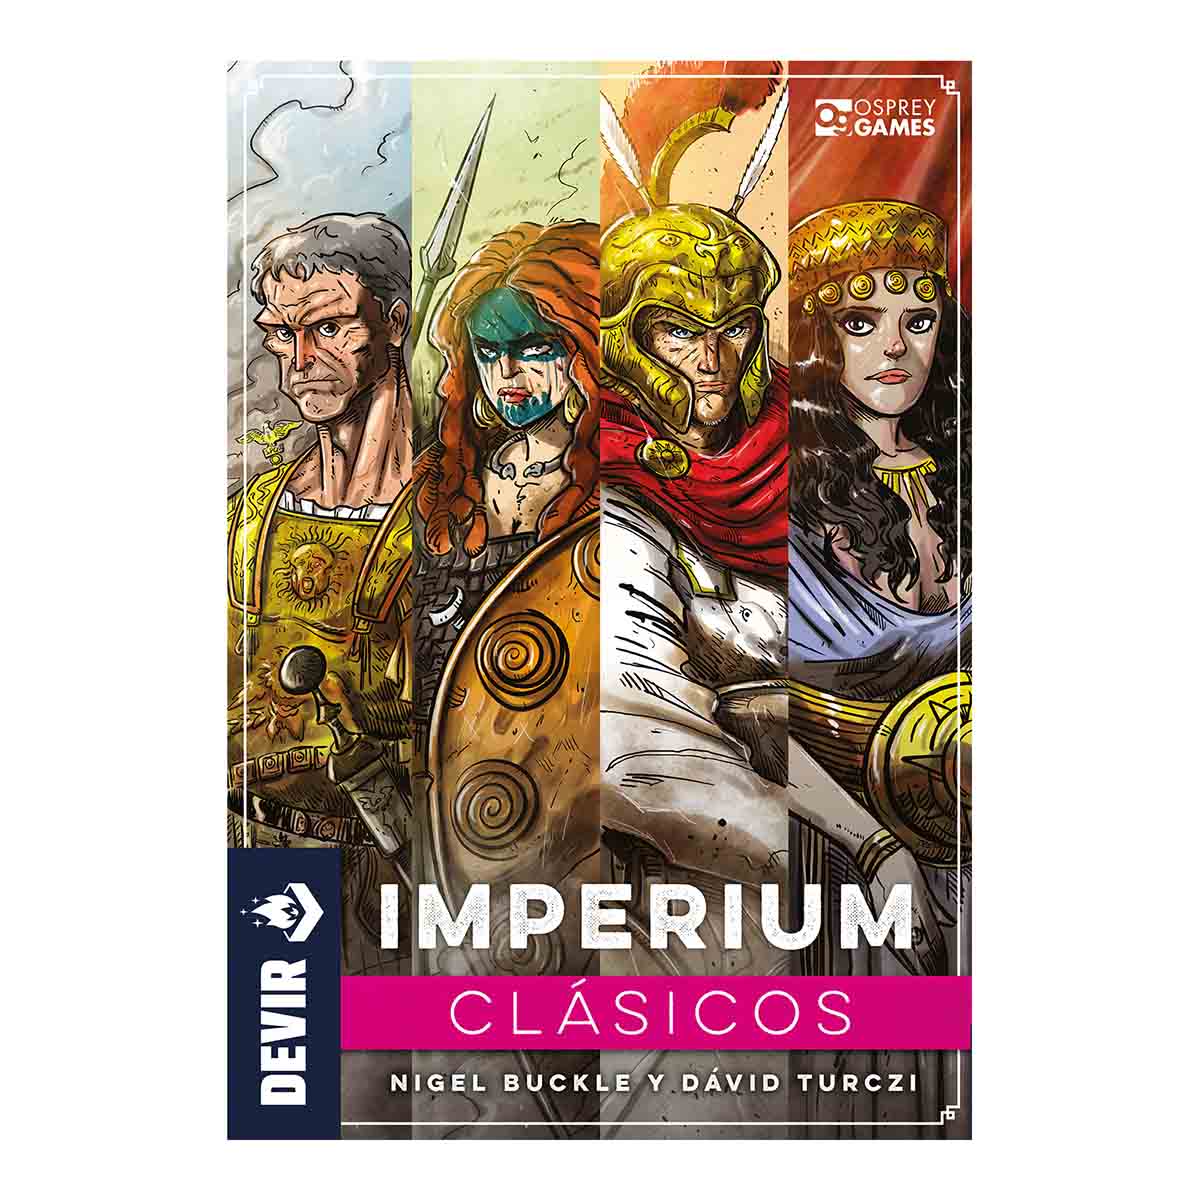 Imperium_Clasicos_1200x1200_front